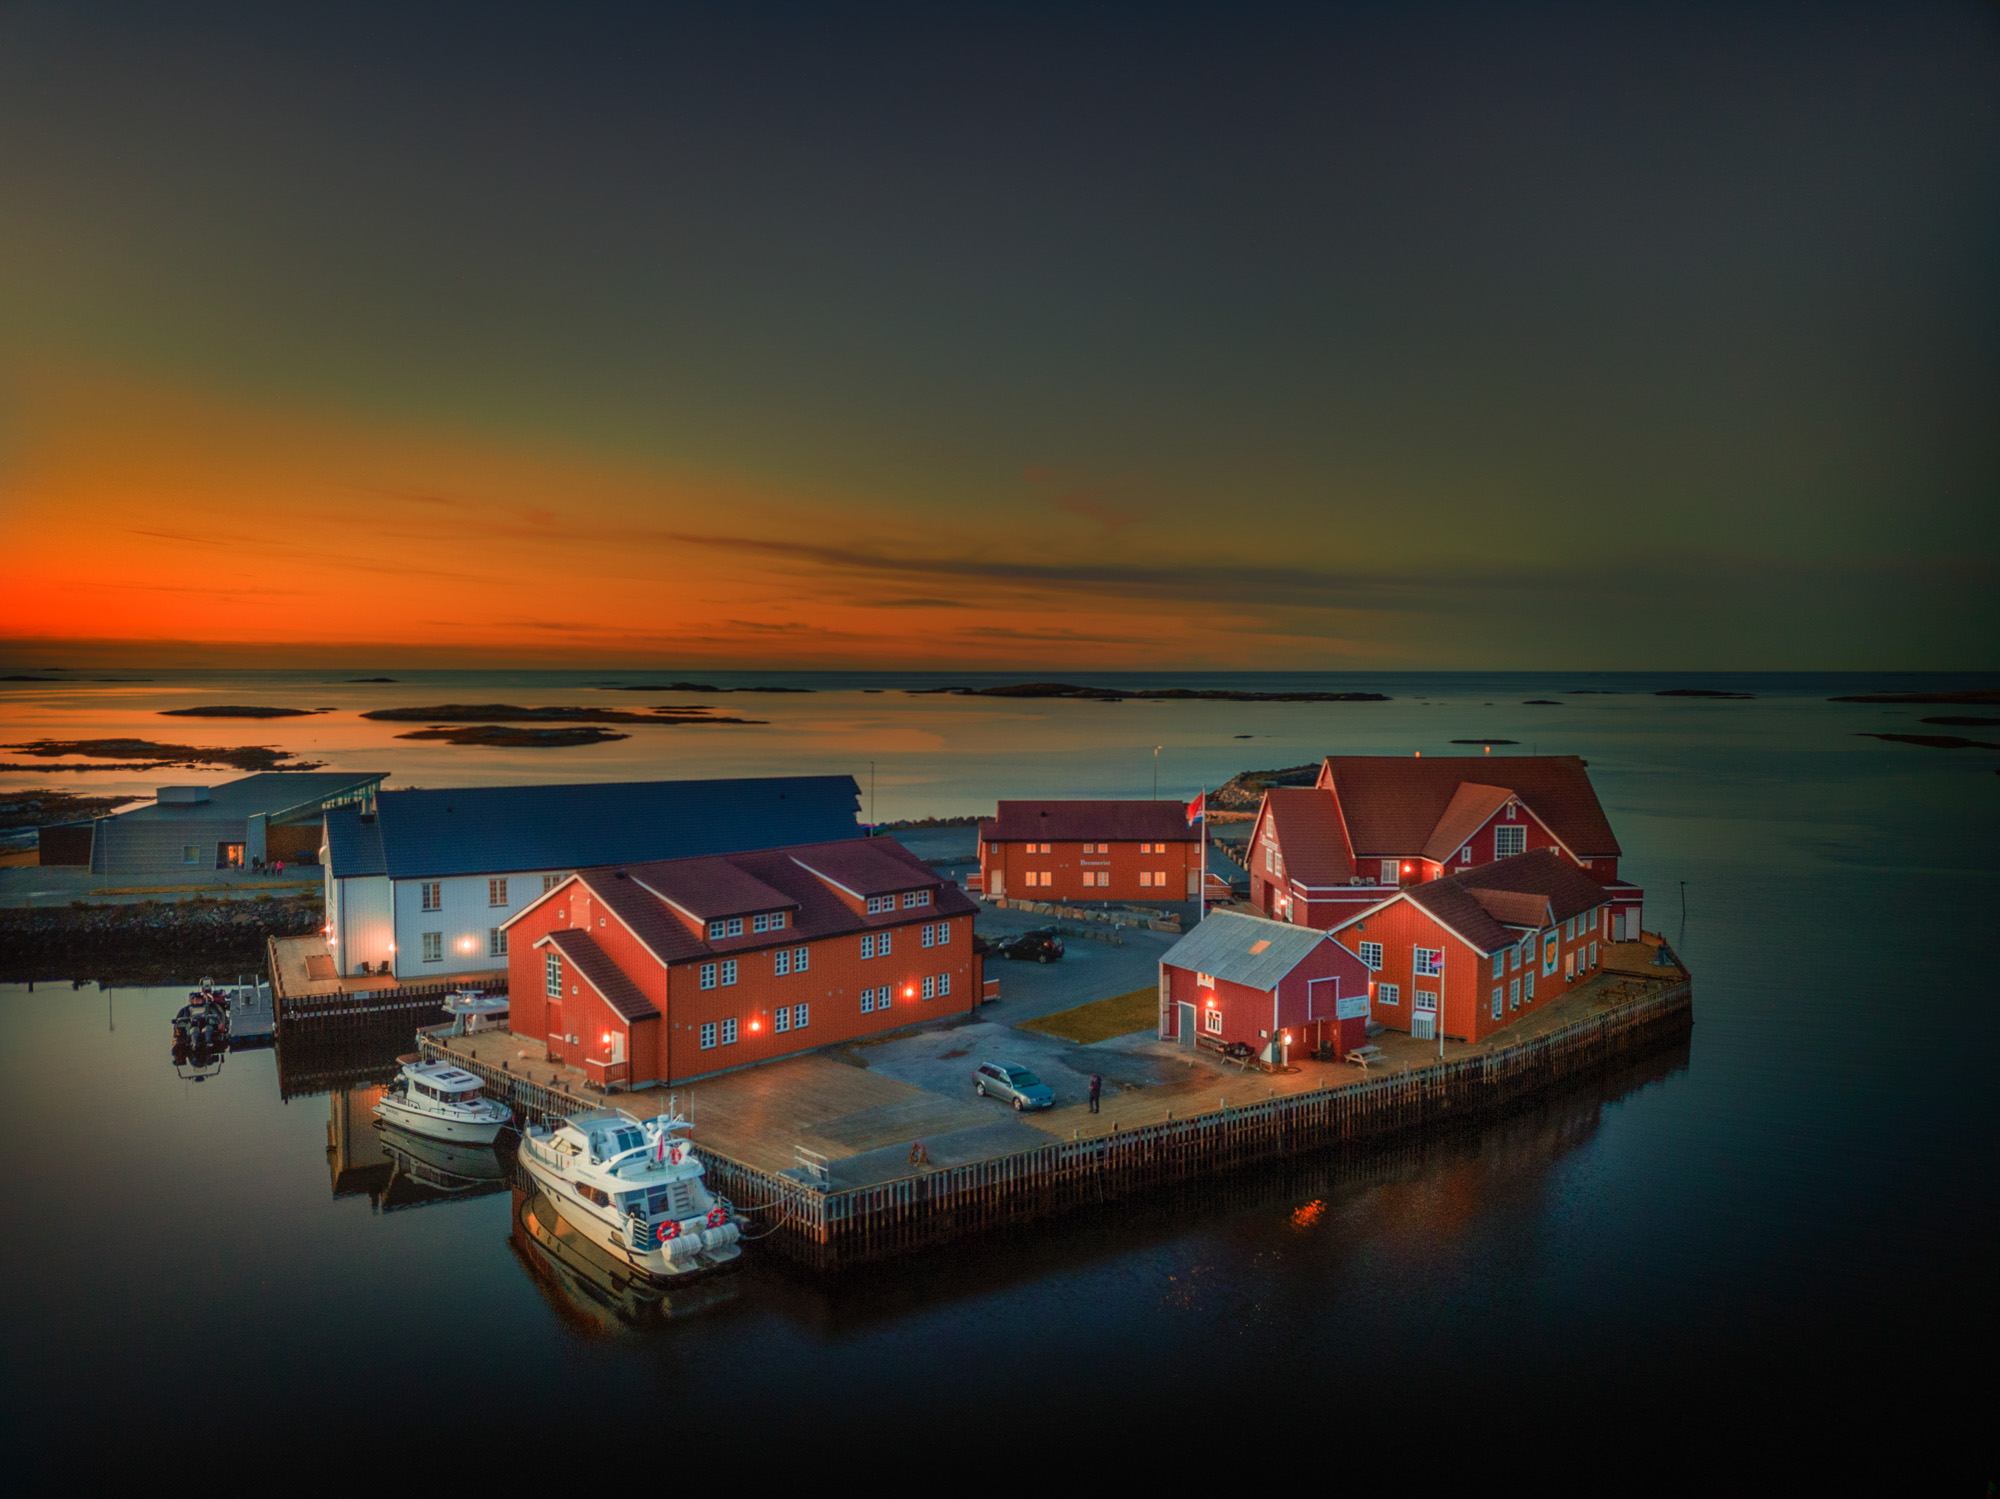 Finnøy Bryggehotell - Midt i øyriket med spektakulære solnedganger